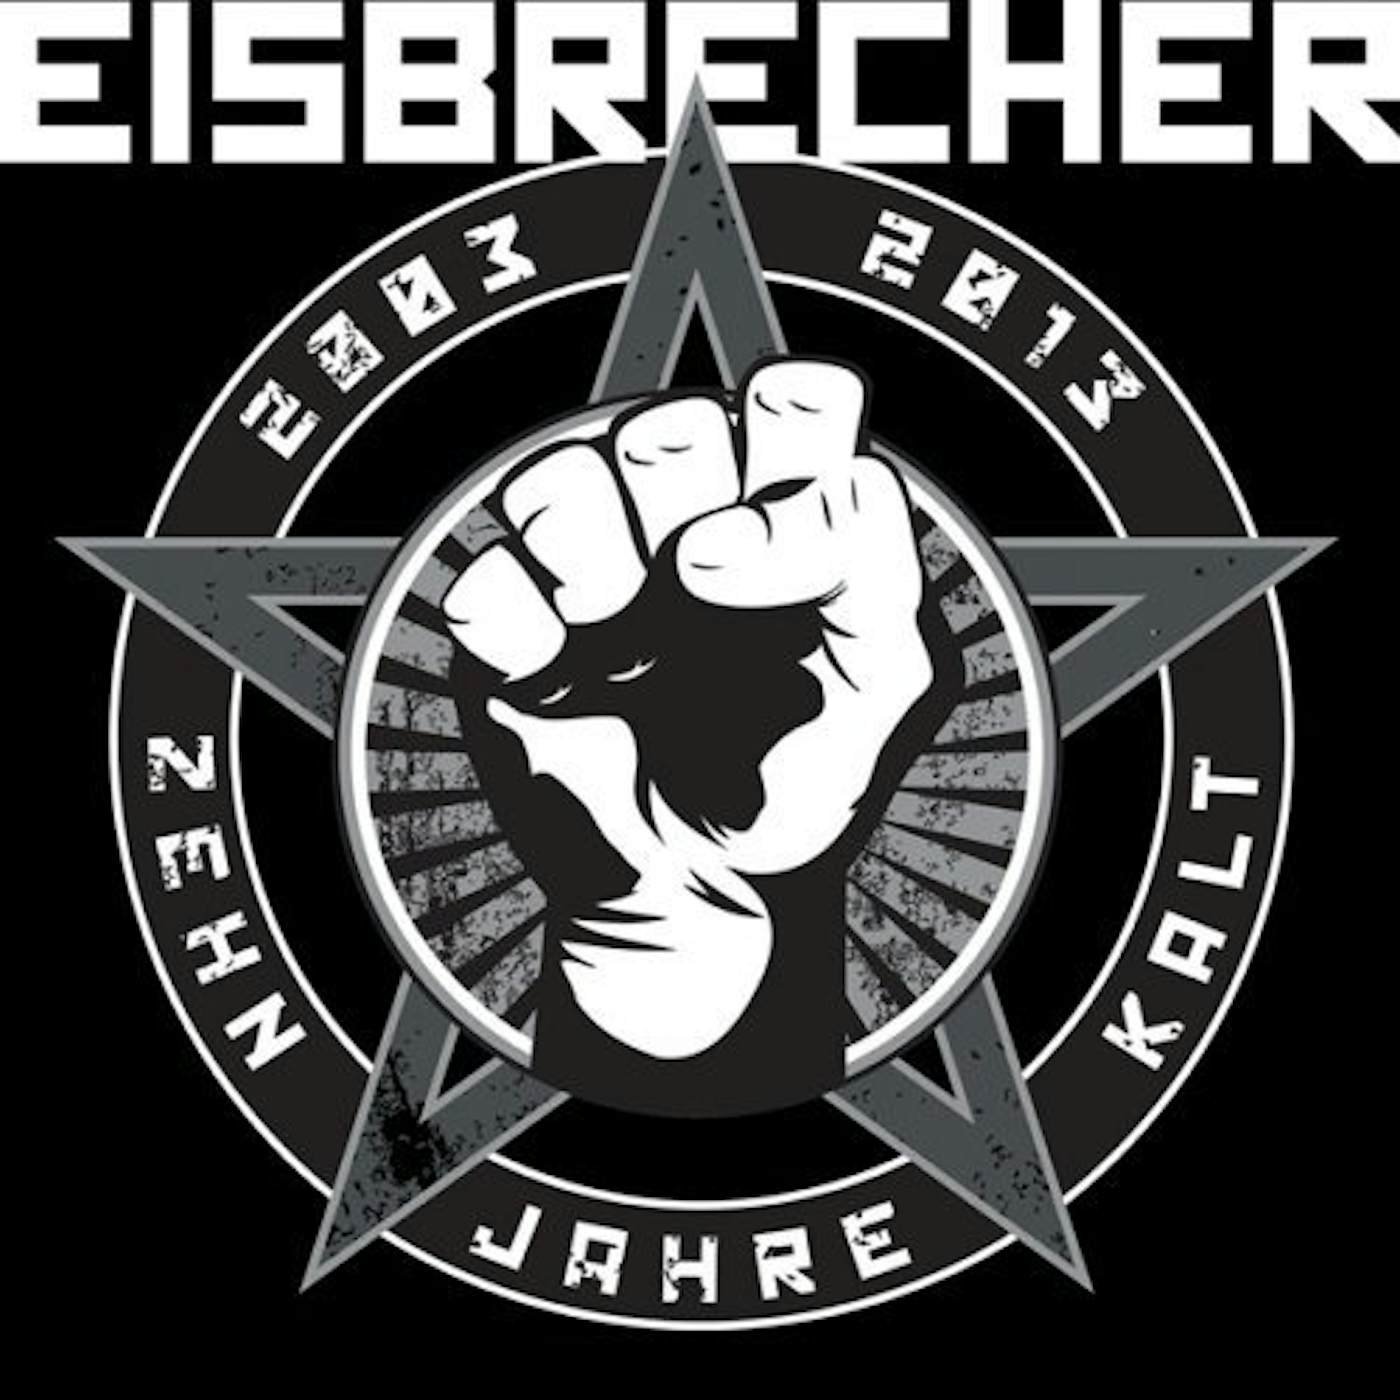 Eisbrecher rot wie. Группа Eisbrecher. Группа Eisbrecher лого. Eisbrecher Постер. Обложки группы Eisbrecher.